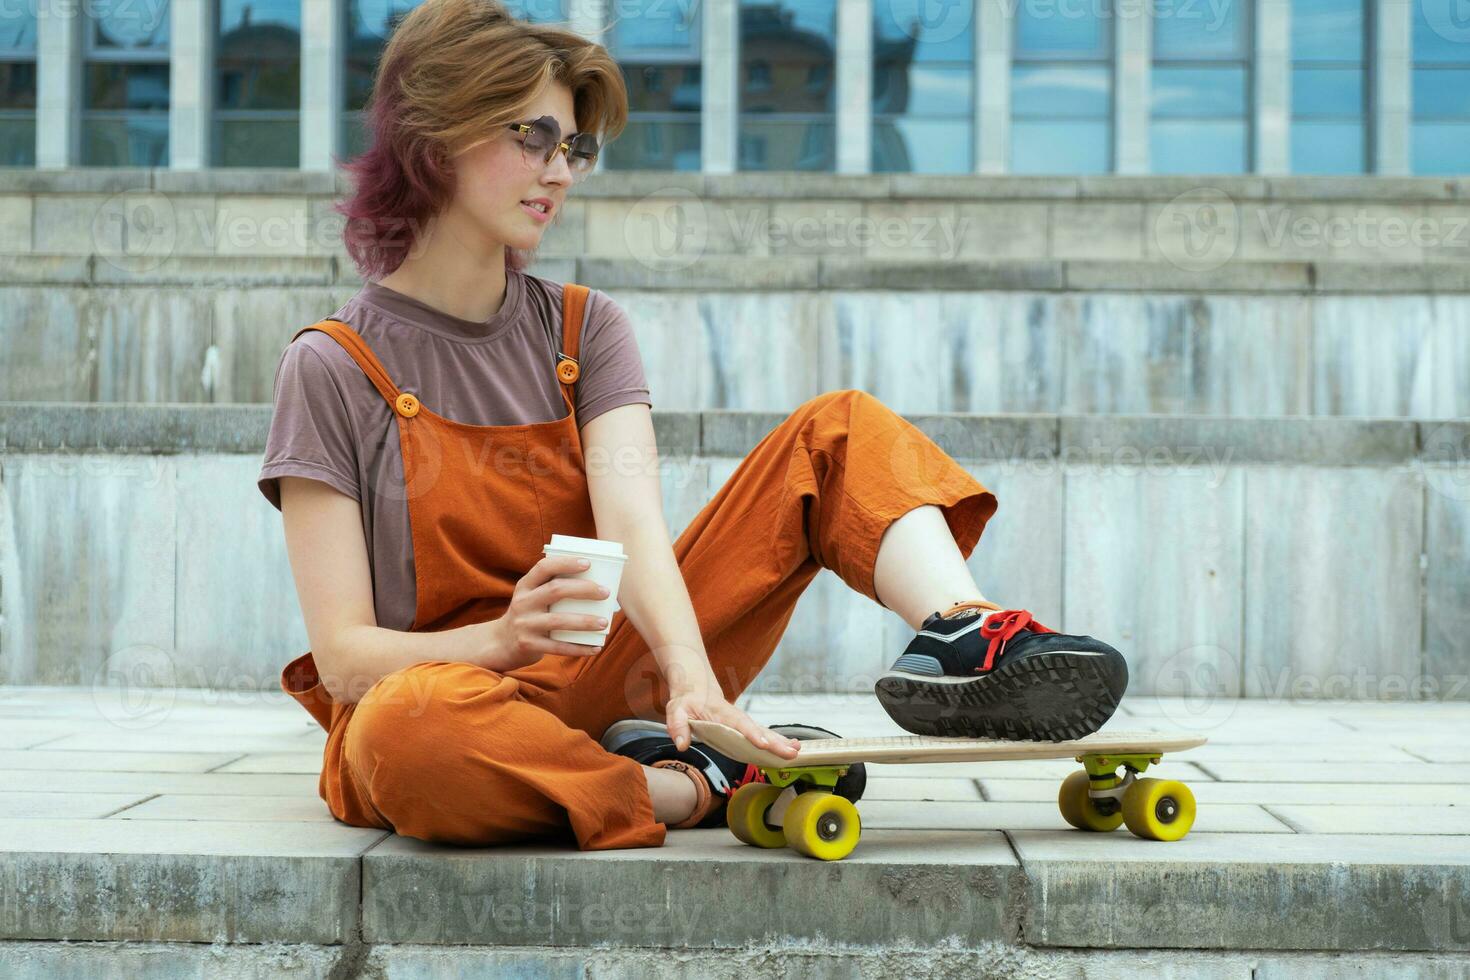 kvinna skater Sammanträde på steg med skateboard och kaffe behållare i henne hand. foto